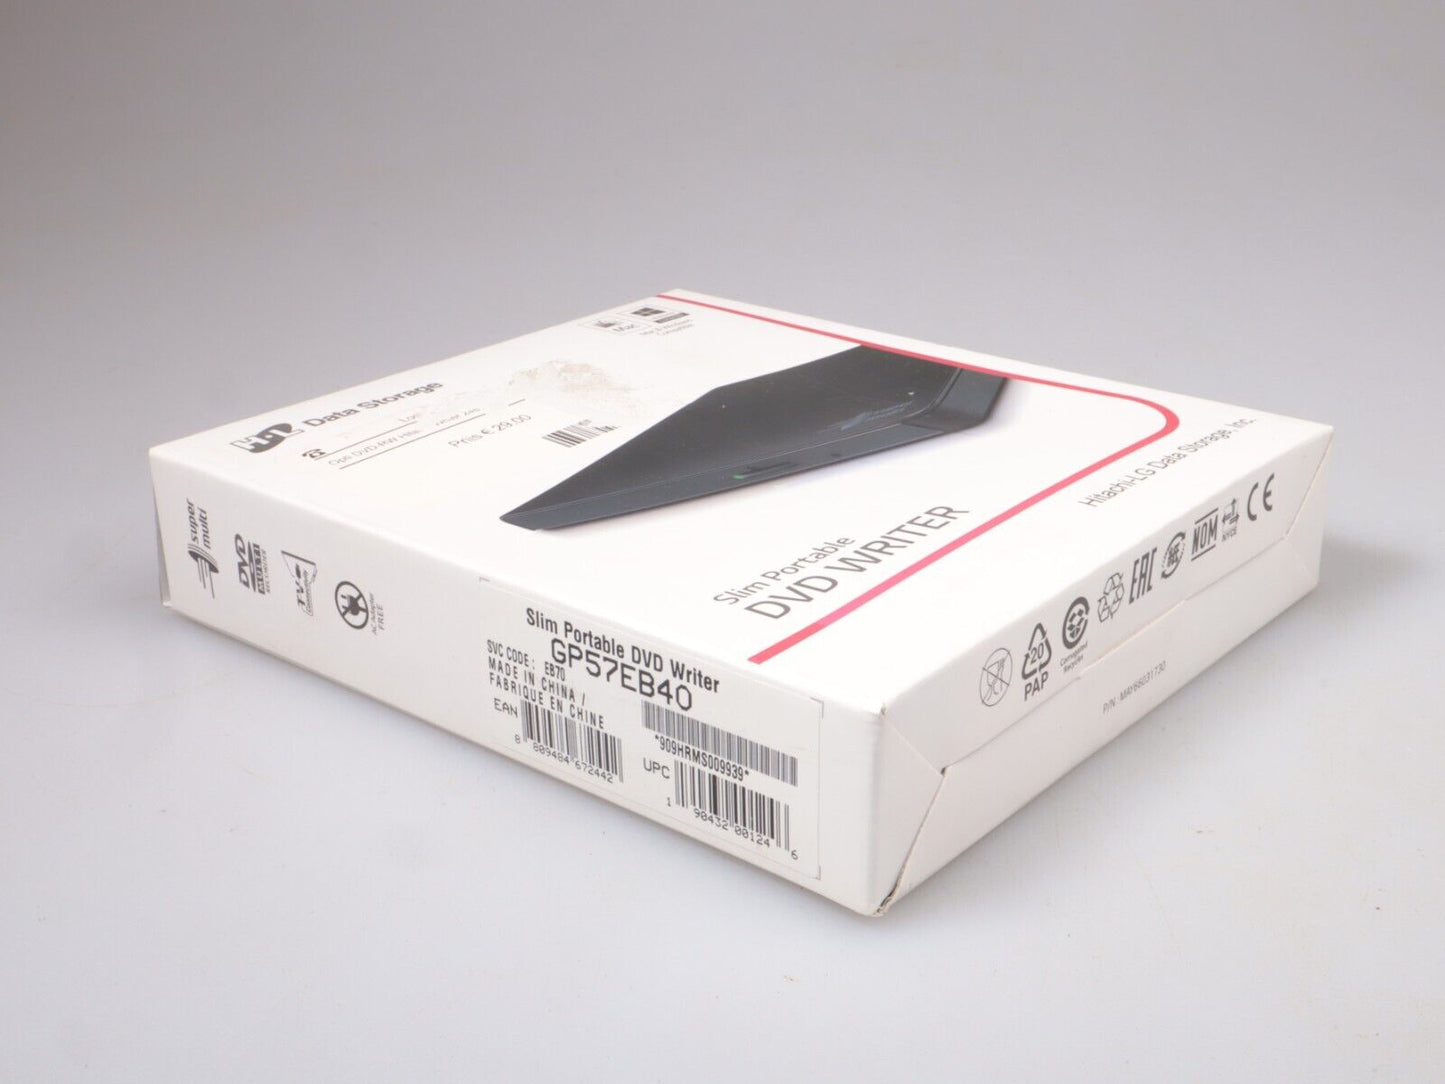 Hitachi-LG GP57 External DVD Drive | Slim Portable DVD Player